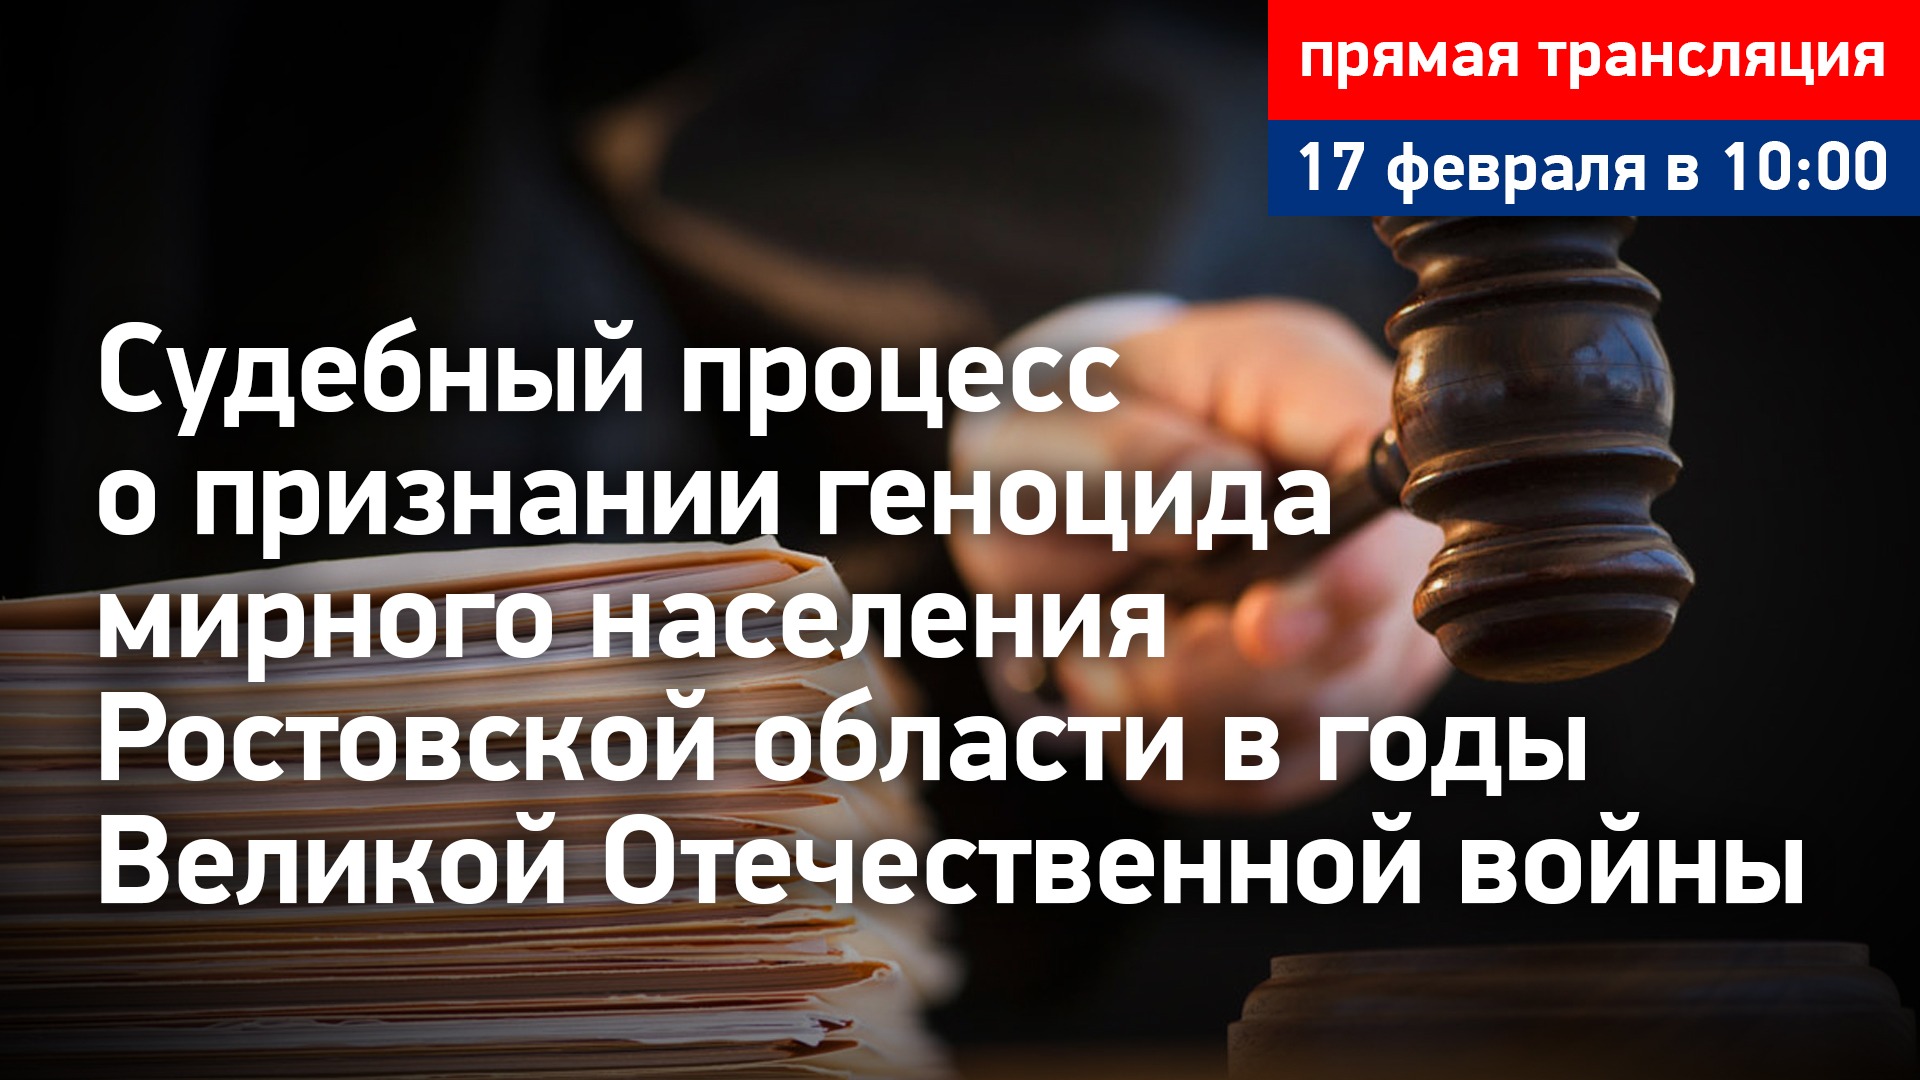 #3 Судебный процесс о признании геноцида мирного населения Ростовской области. Прямая трансляция